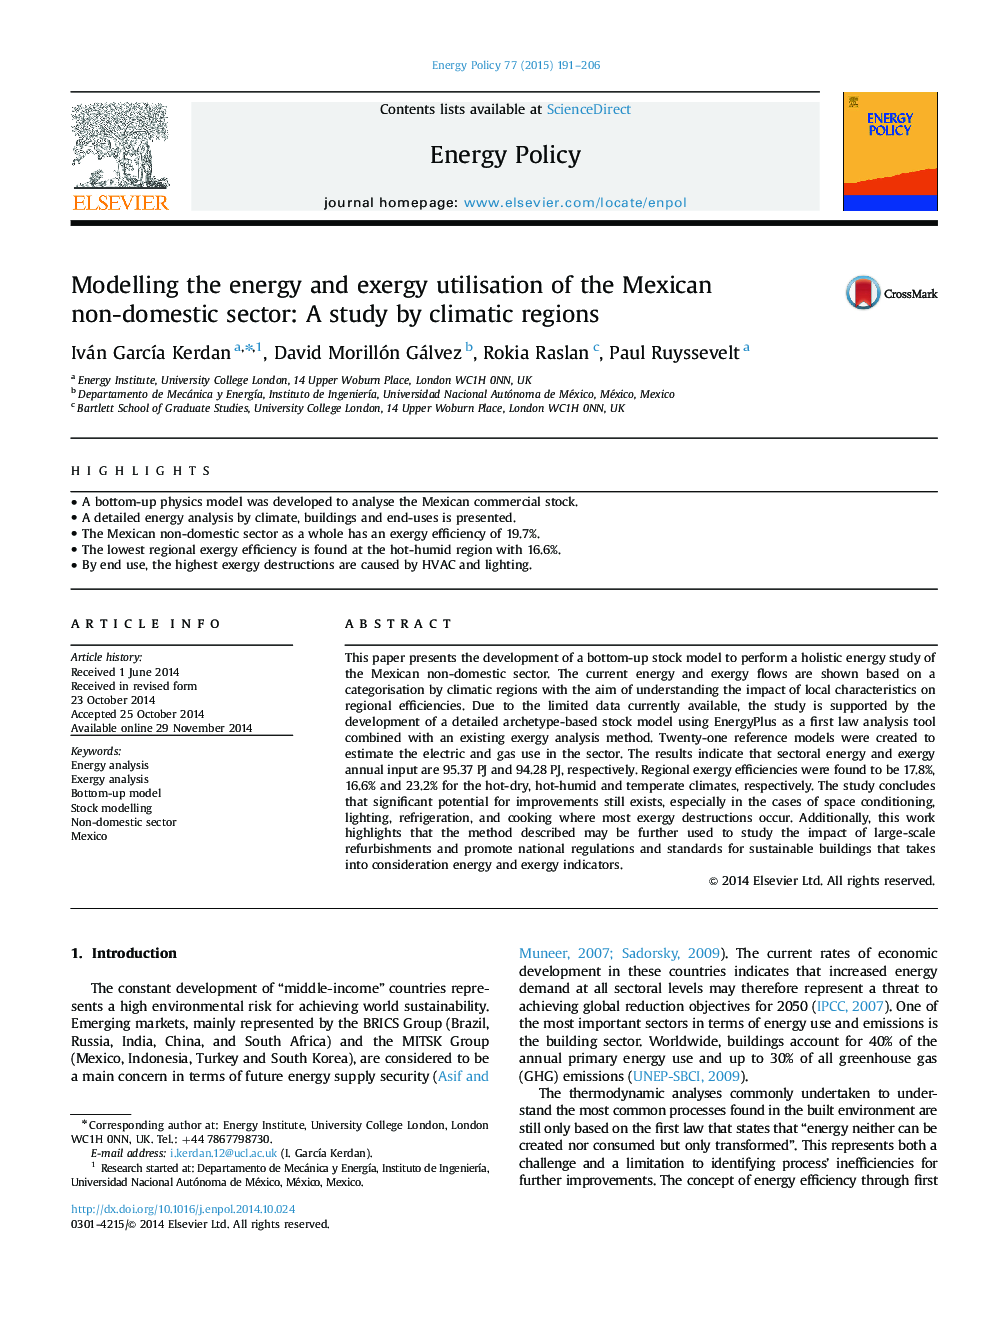 مدل سازی انرژی و استفاده از اگزرژی بخش غیر داخلی مکزیک: مطالعه منطقه های آب و هوایی 